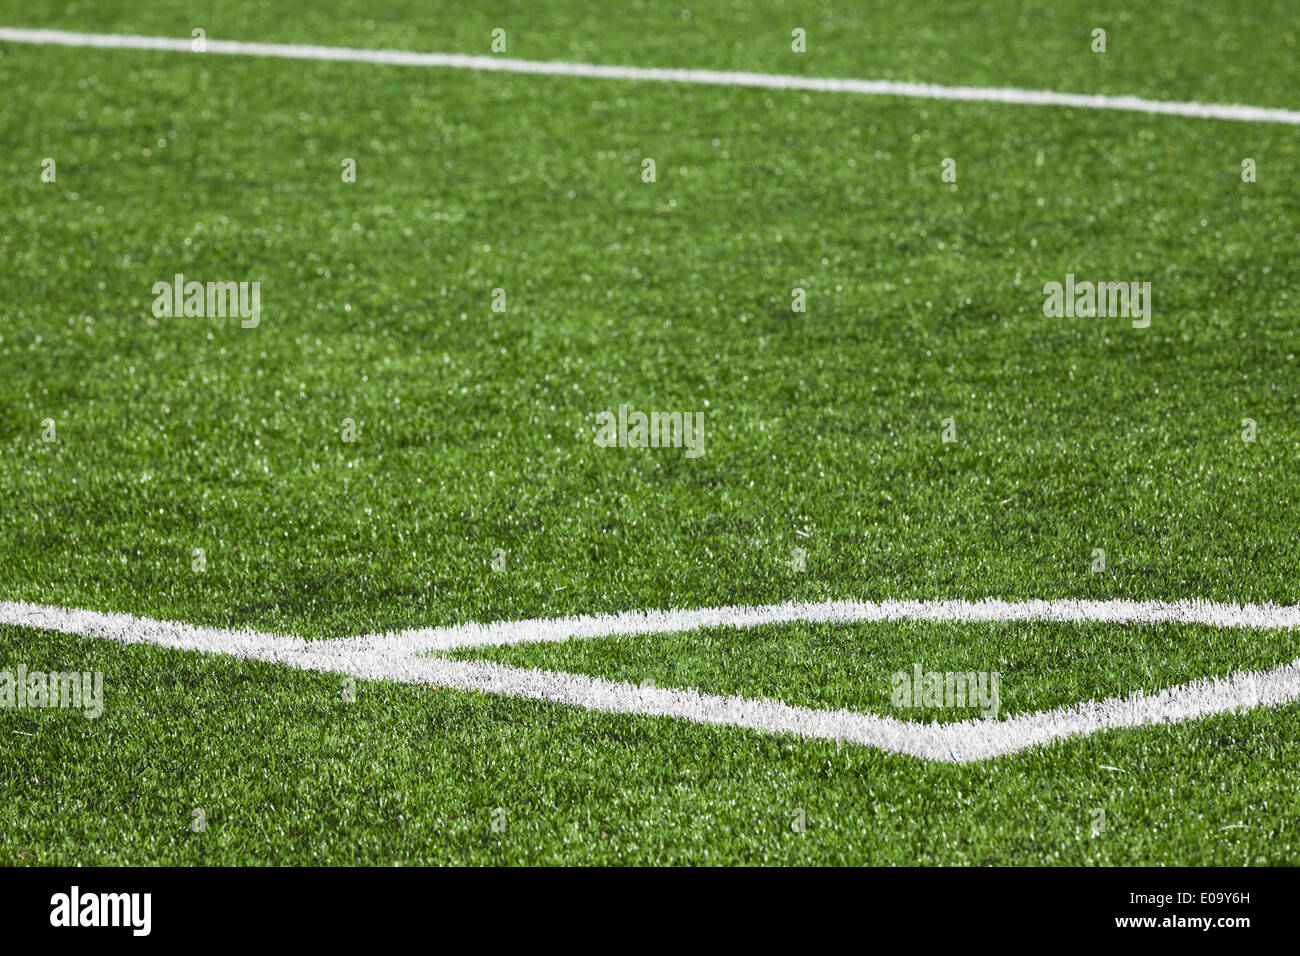 Fußball-Spielfeld-Hintergrund mit grünem Rasen und weiße Ecke Kennzeichnung Stockfoto